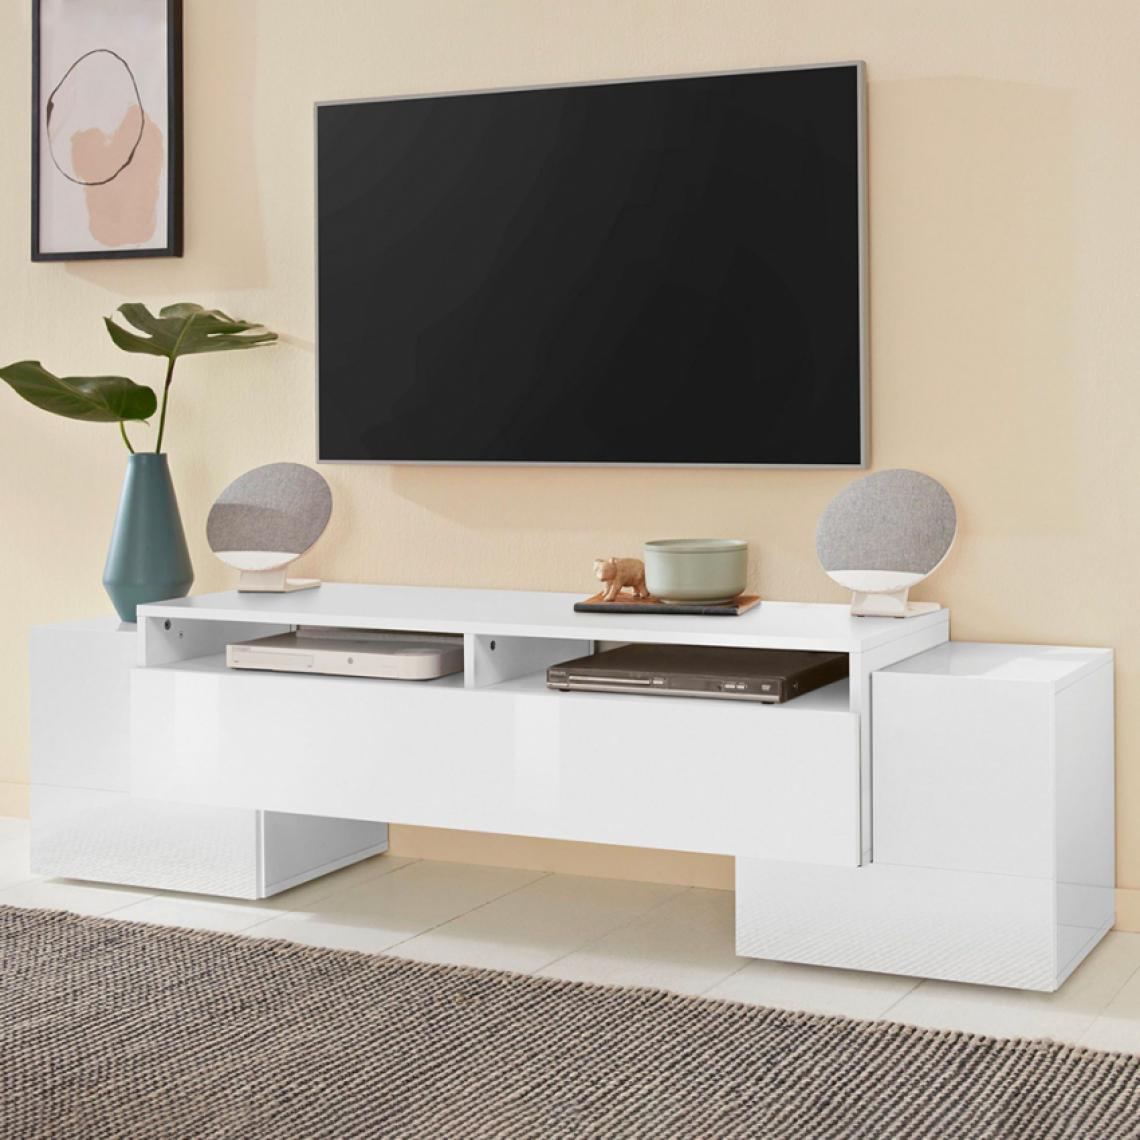 Ahd Amazing Home Design - Meuble TV 170cm Salon 3 Portes 2 Compartiments Ouverts Design Pillon L - Meubles TV, Hi-Fi